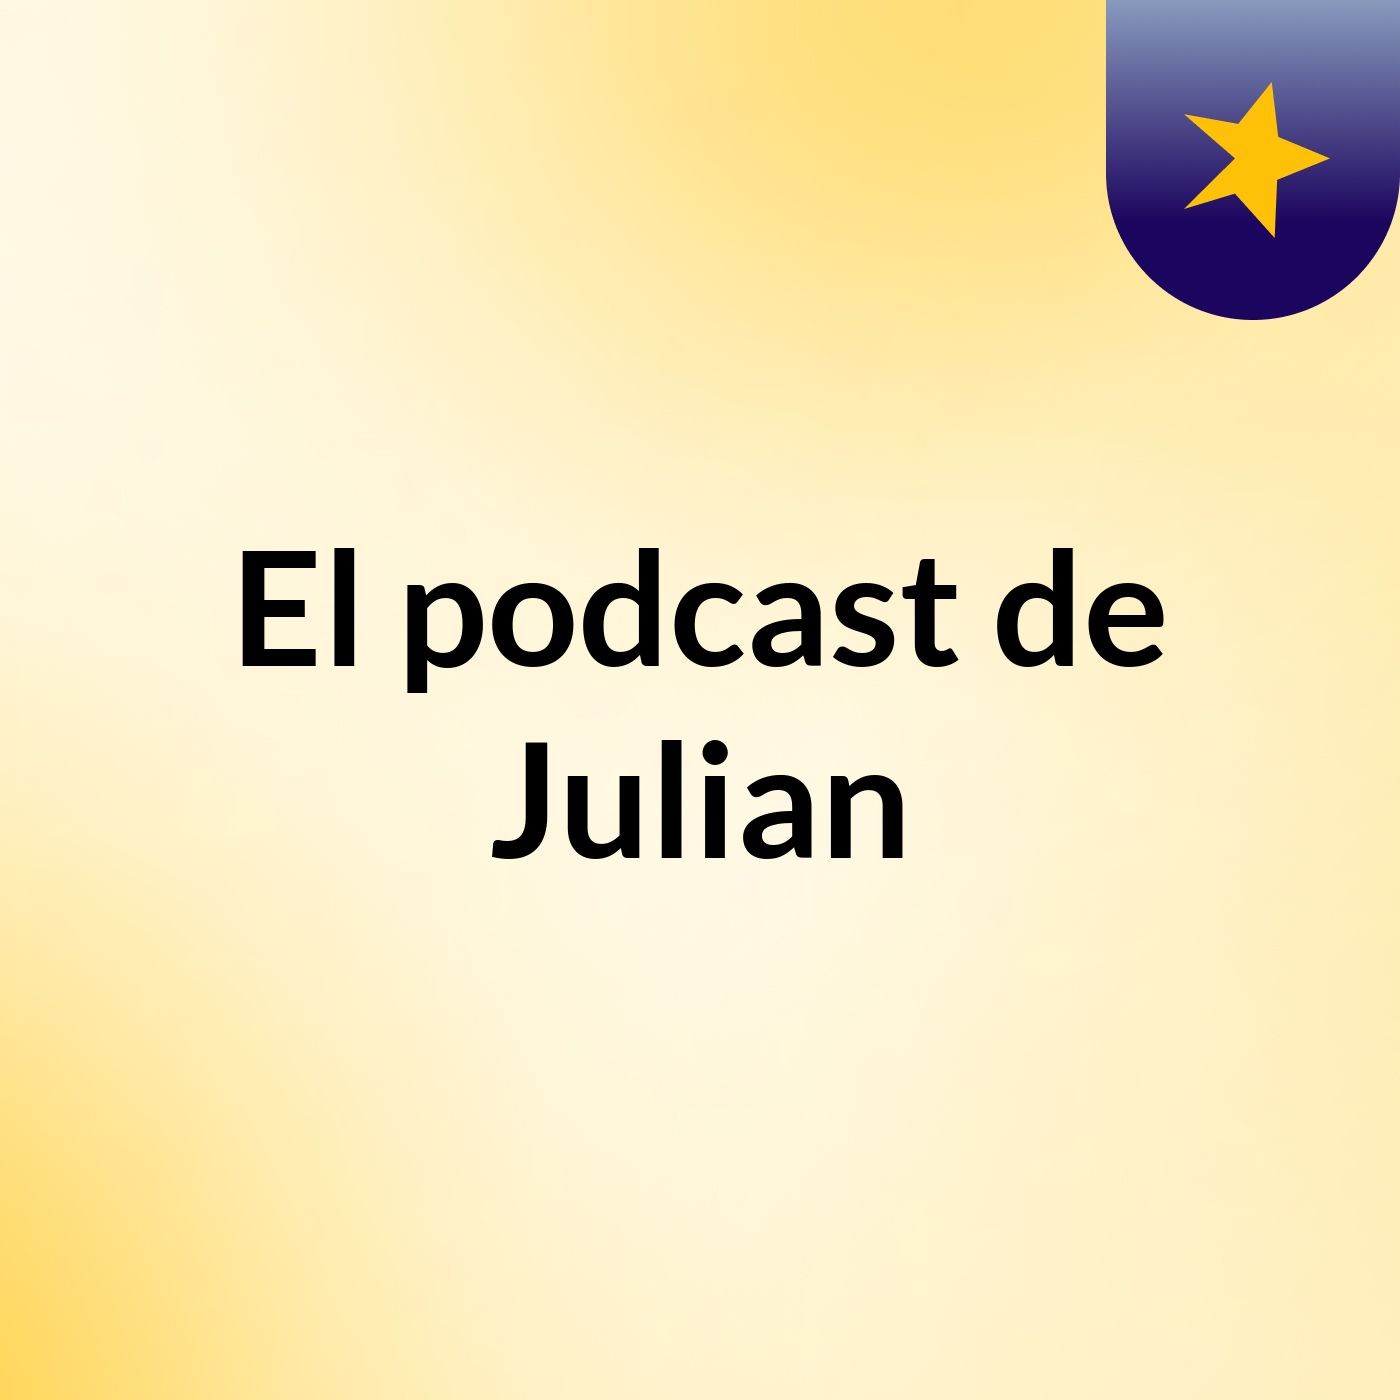 El podcast de Julian